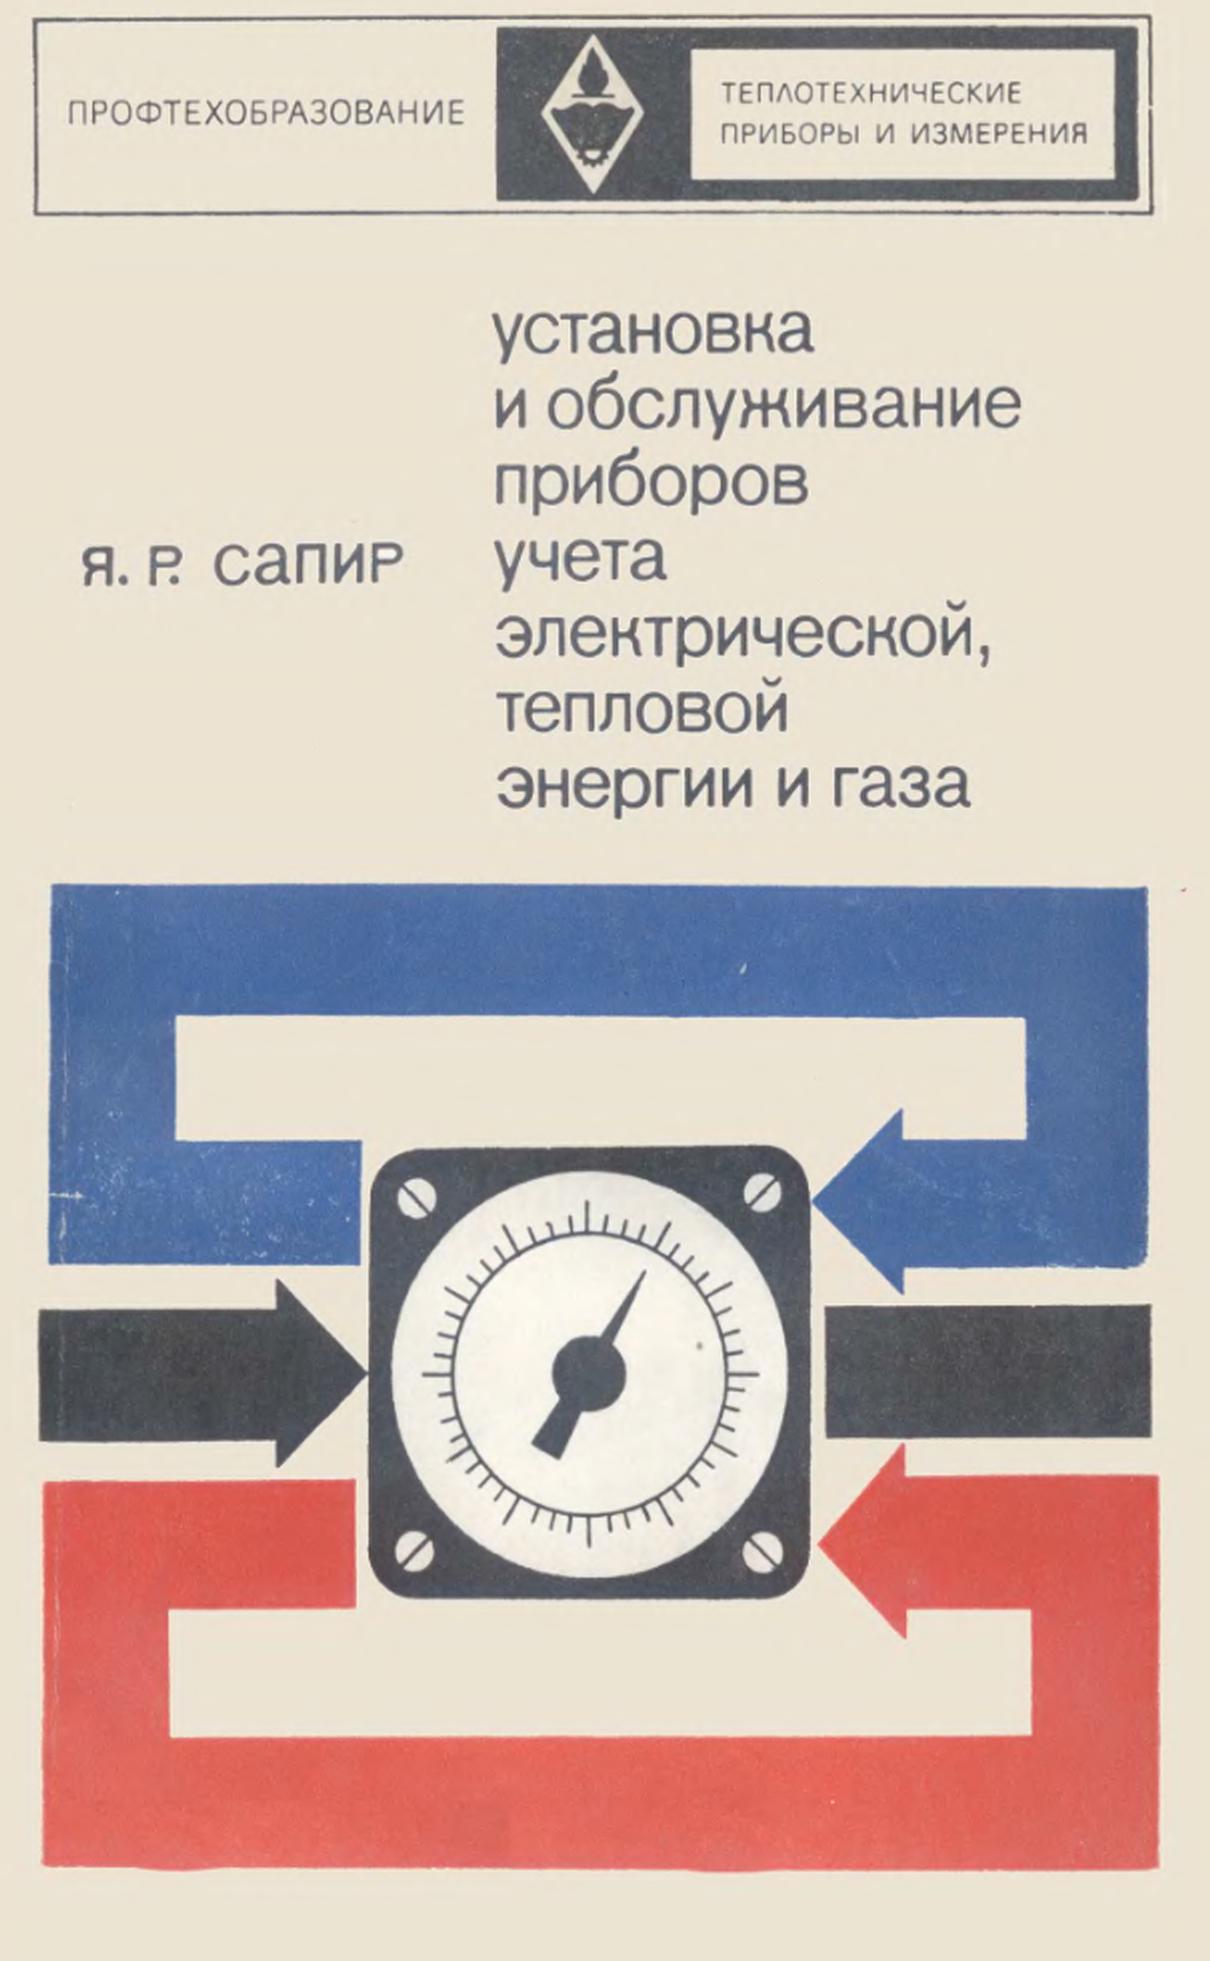 Установка и обслуживание приборов учета электрической, тепловой энергии и газа, Учебник, Сапир Я.Р., 1972